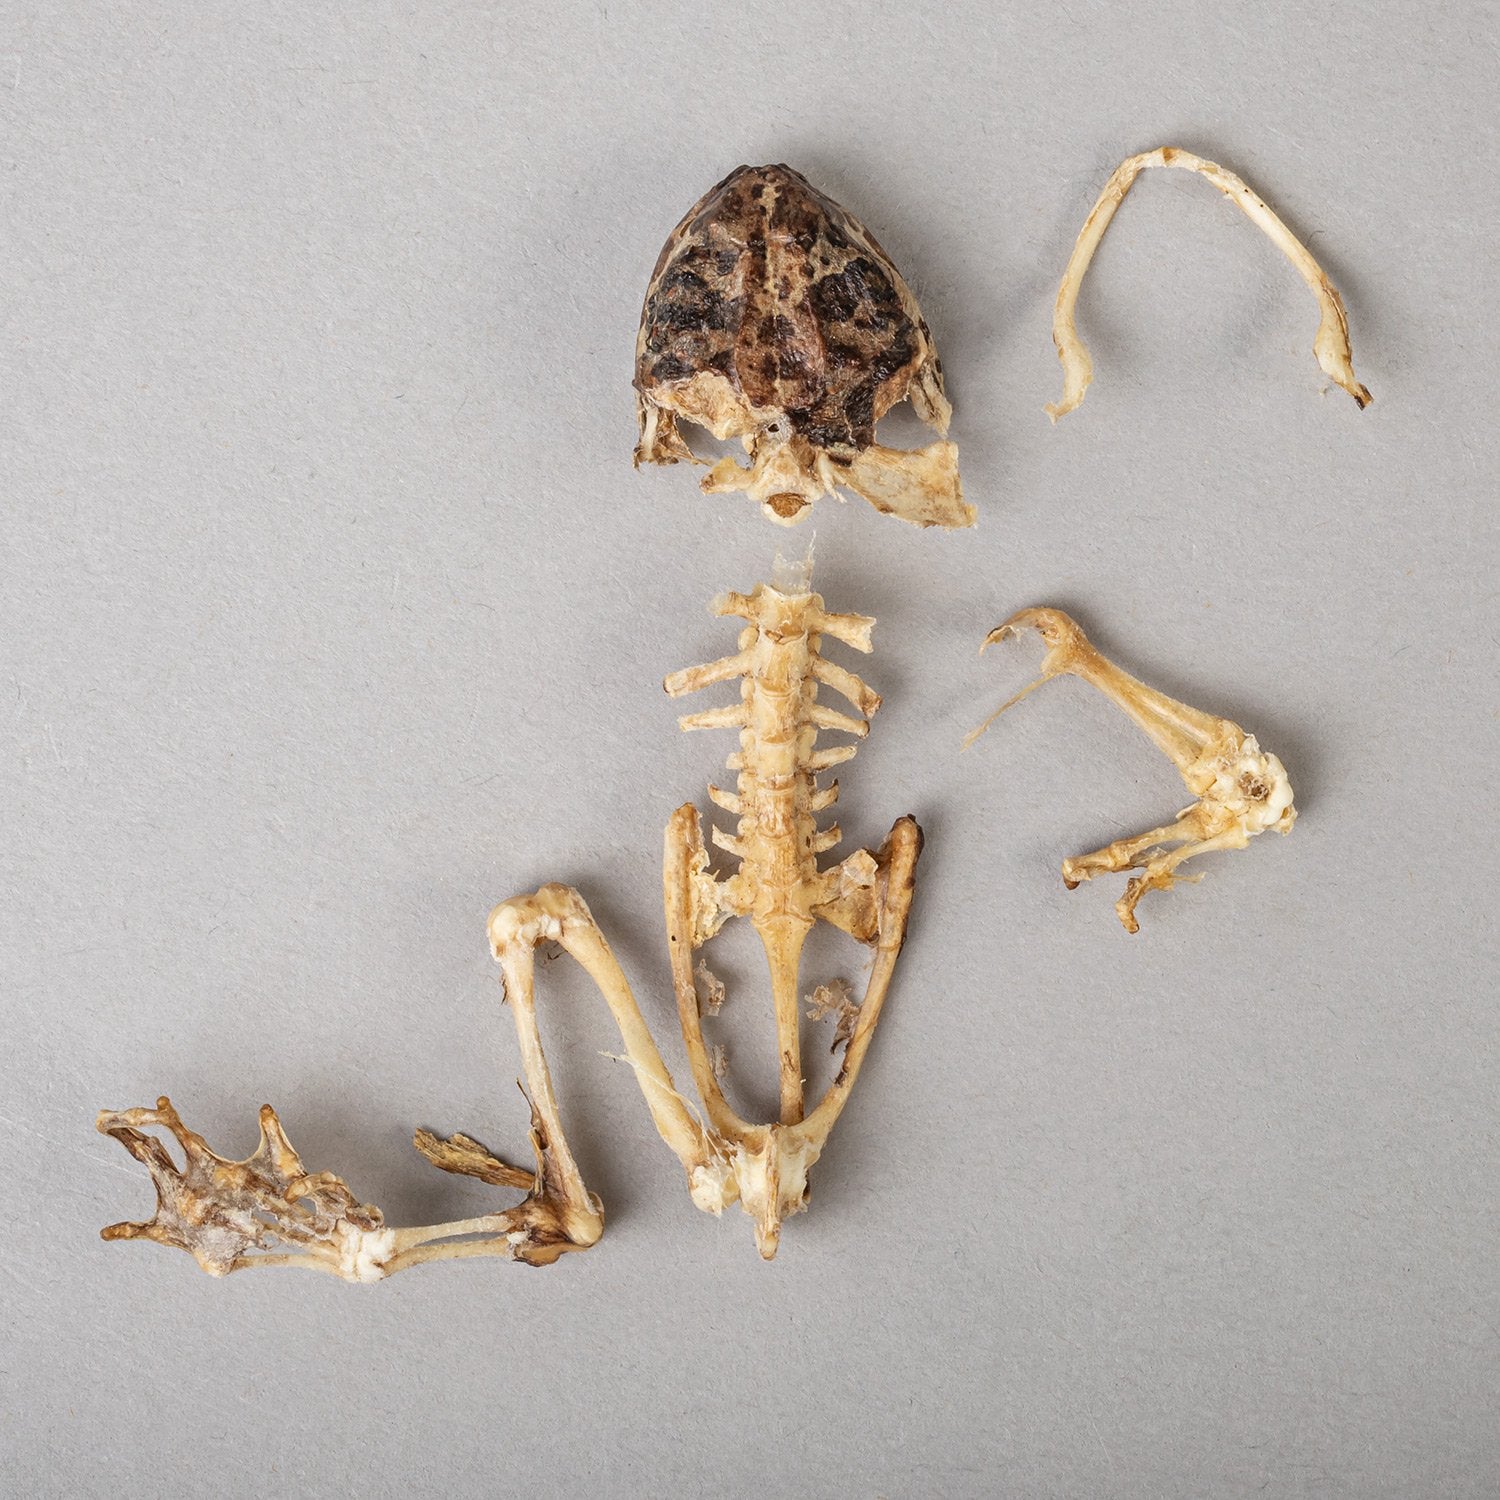 frog skeletal system skull